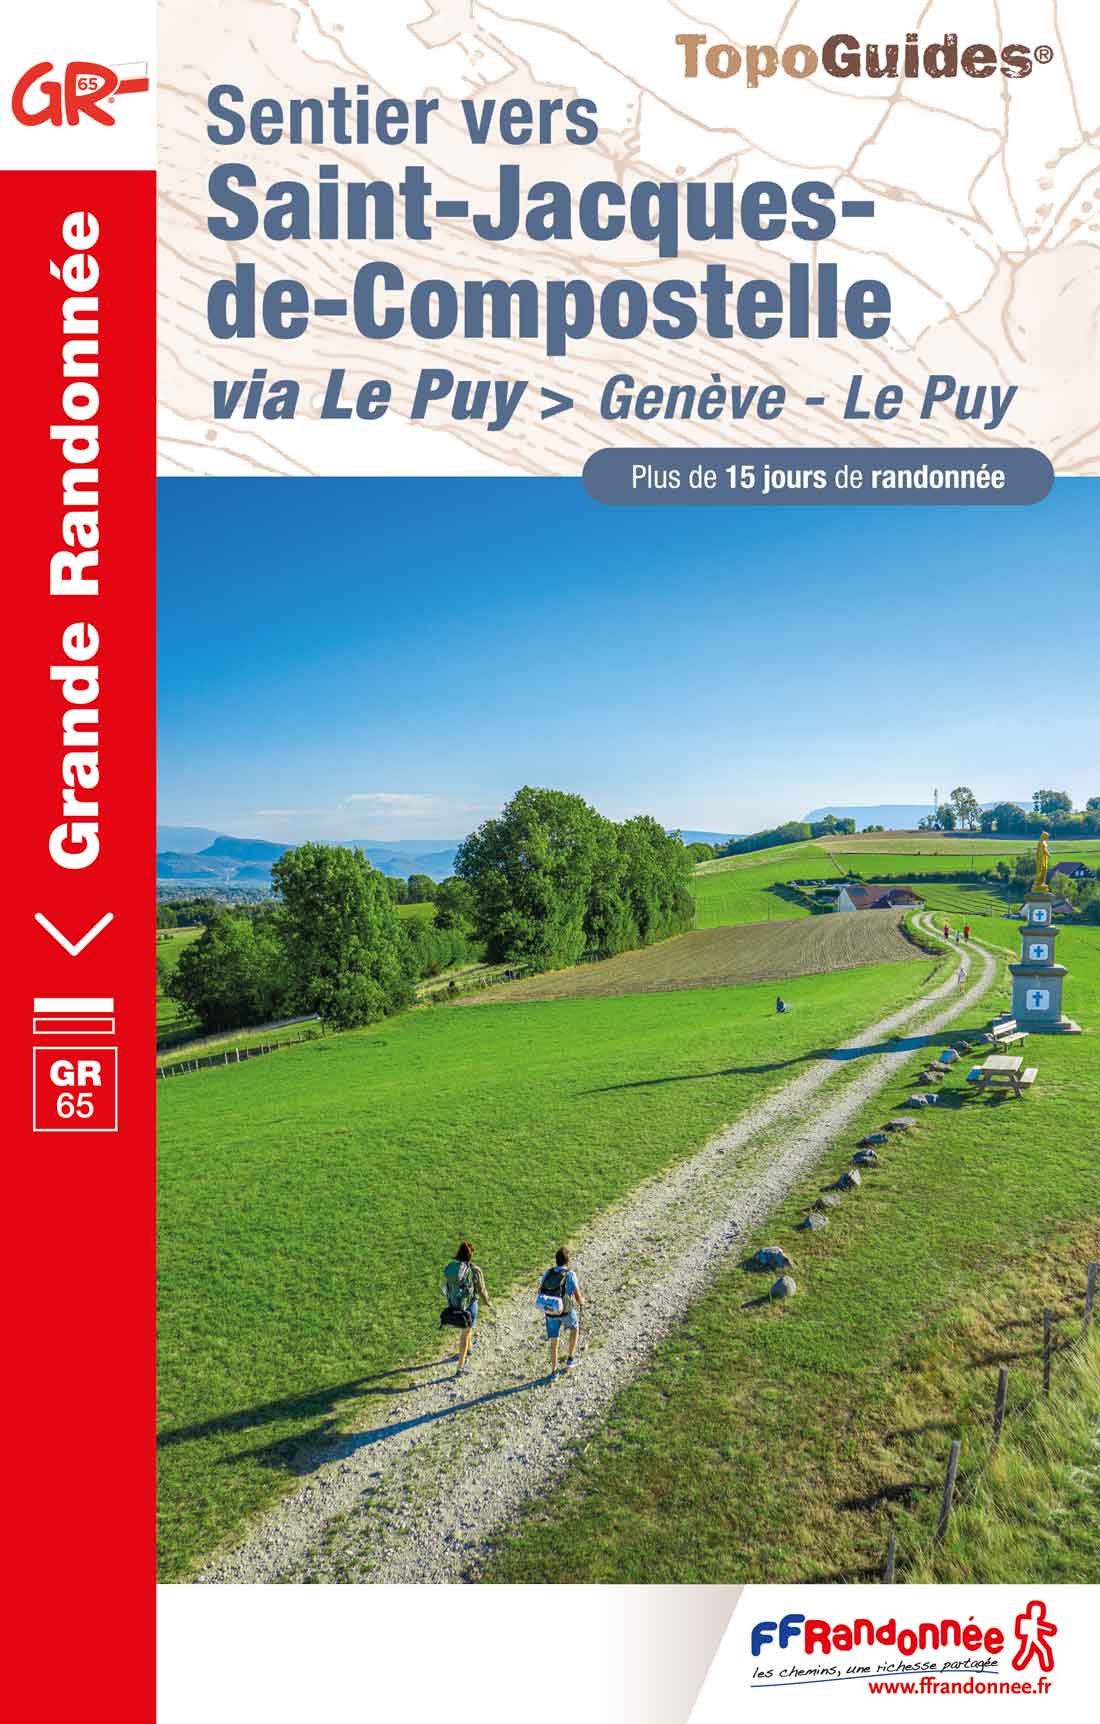 Topoguide FFRandonnée GR 65 - sentier vers Saint - jacques - Compostelle via Le Puy - Genève - Le Puy